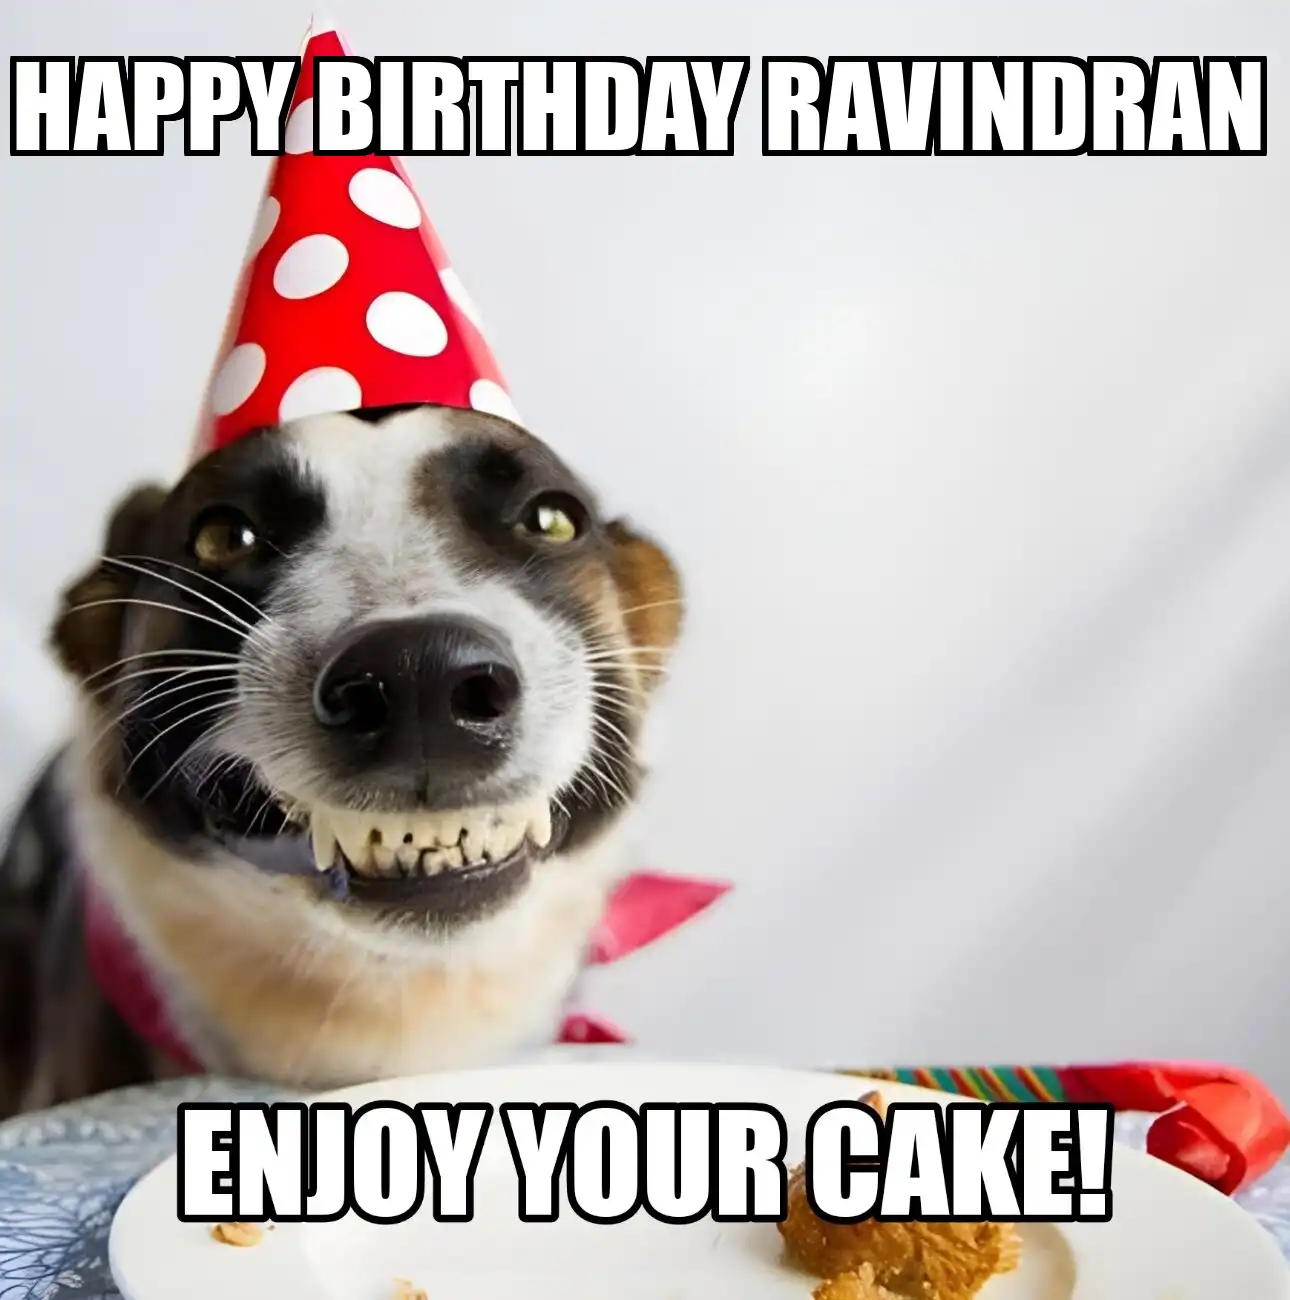 Happy Birthday Ravindran Enjoy Your Cake Dog Meme